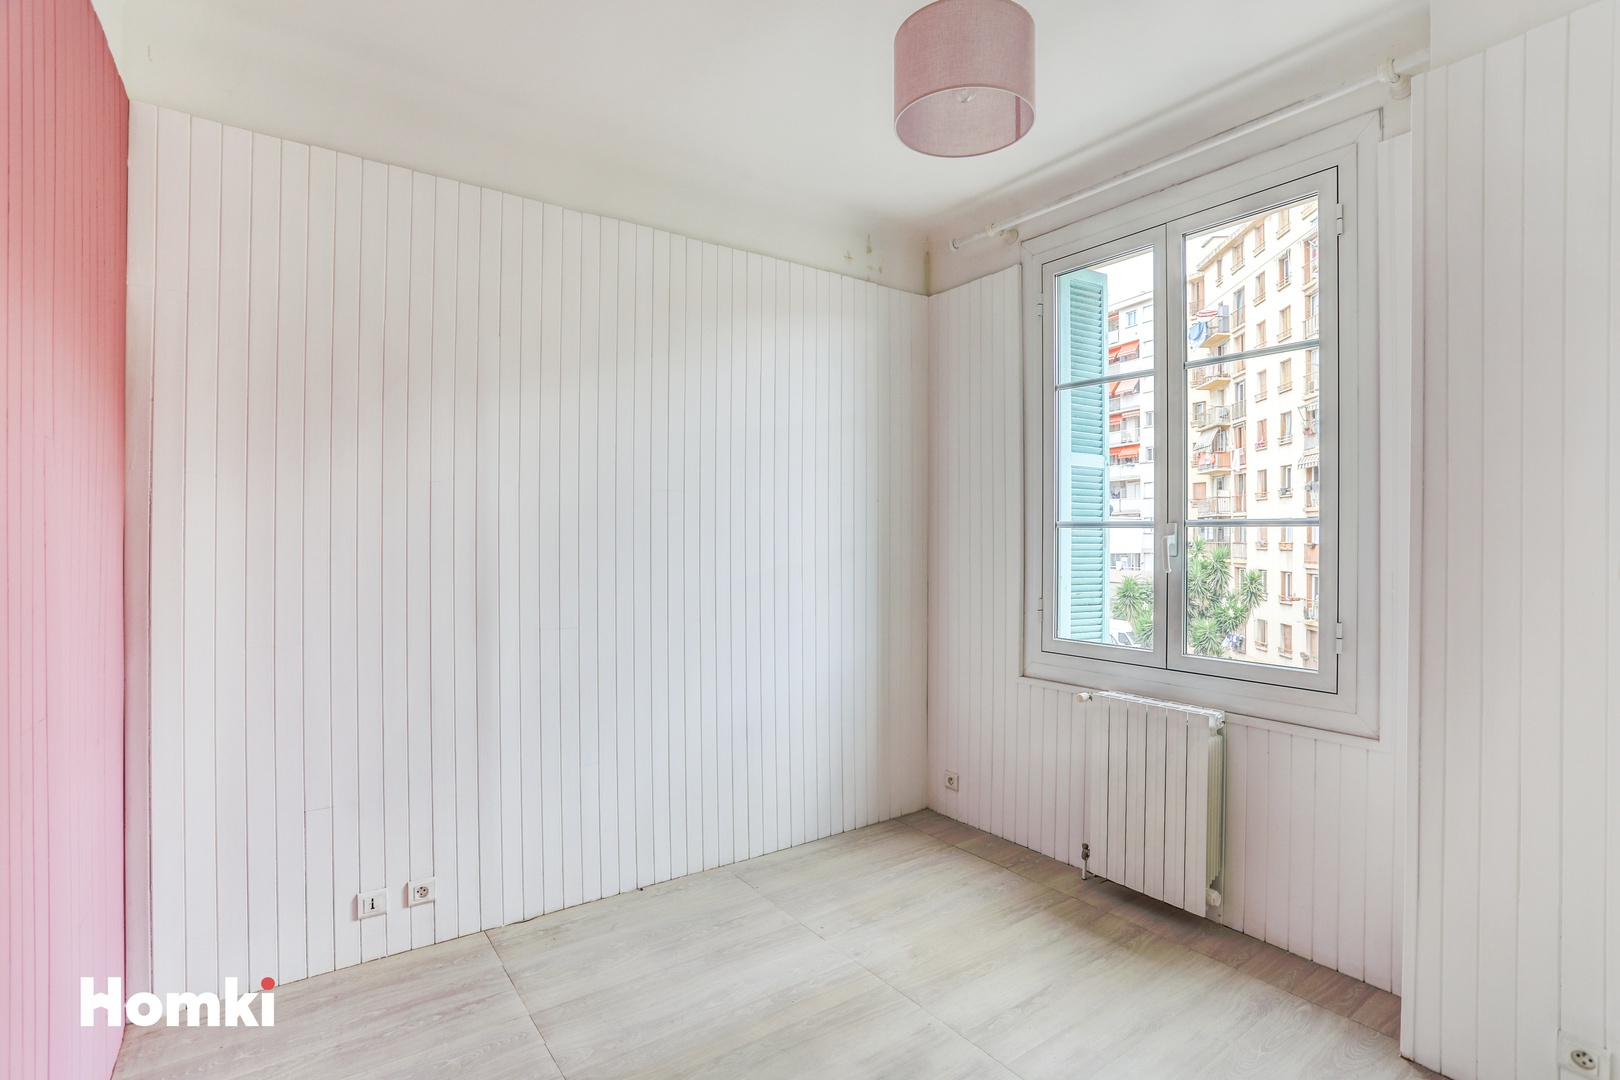 Homki - Vente Appartement  de 80.32 m² à Nice 06000